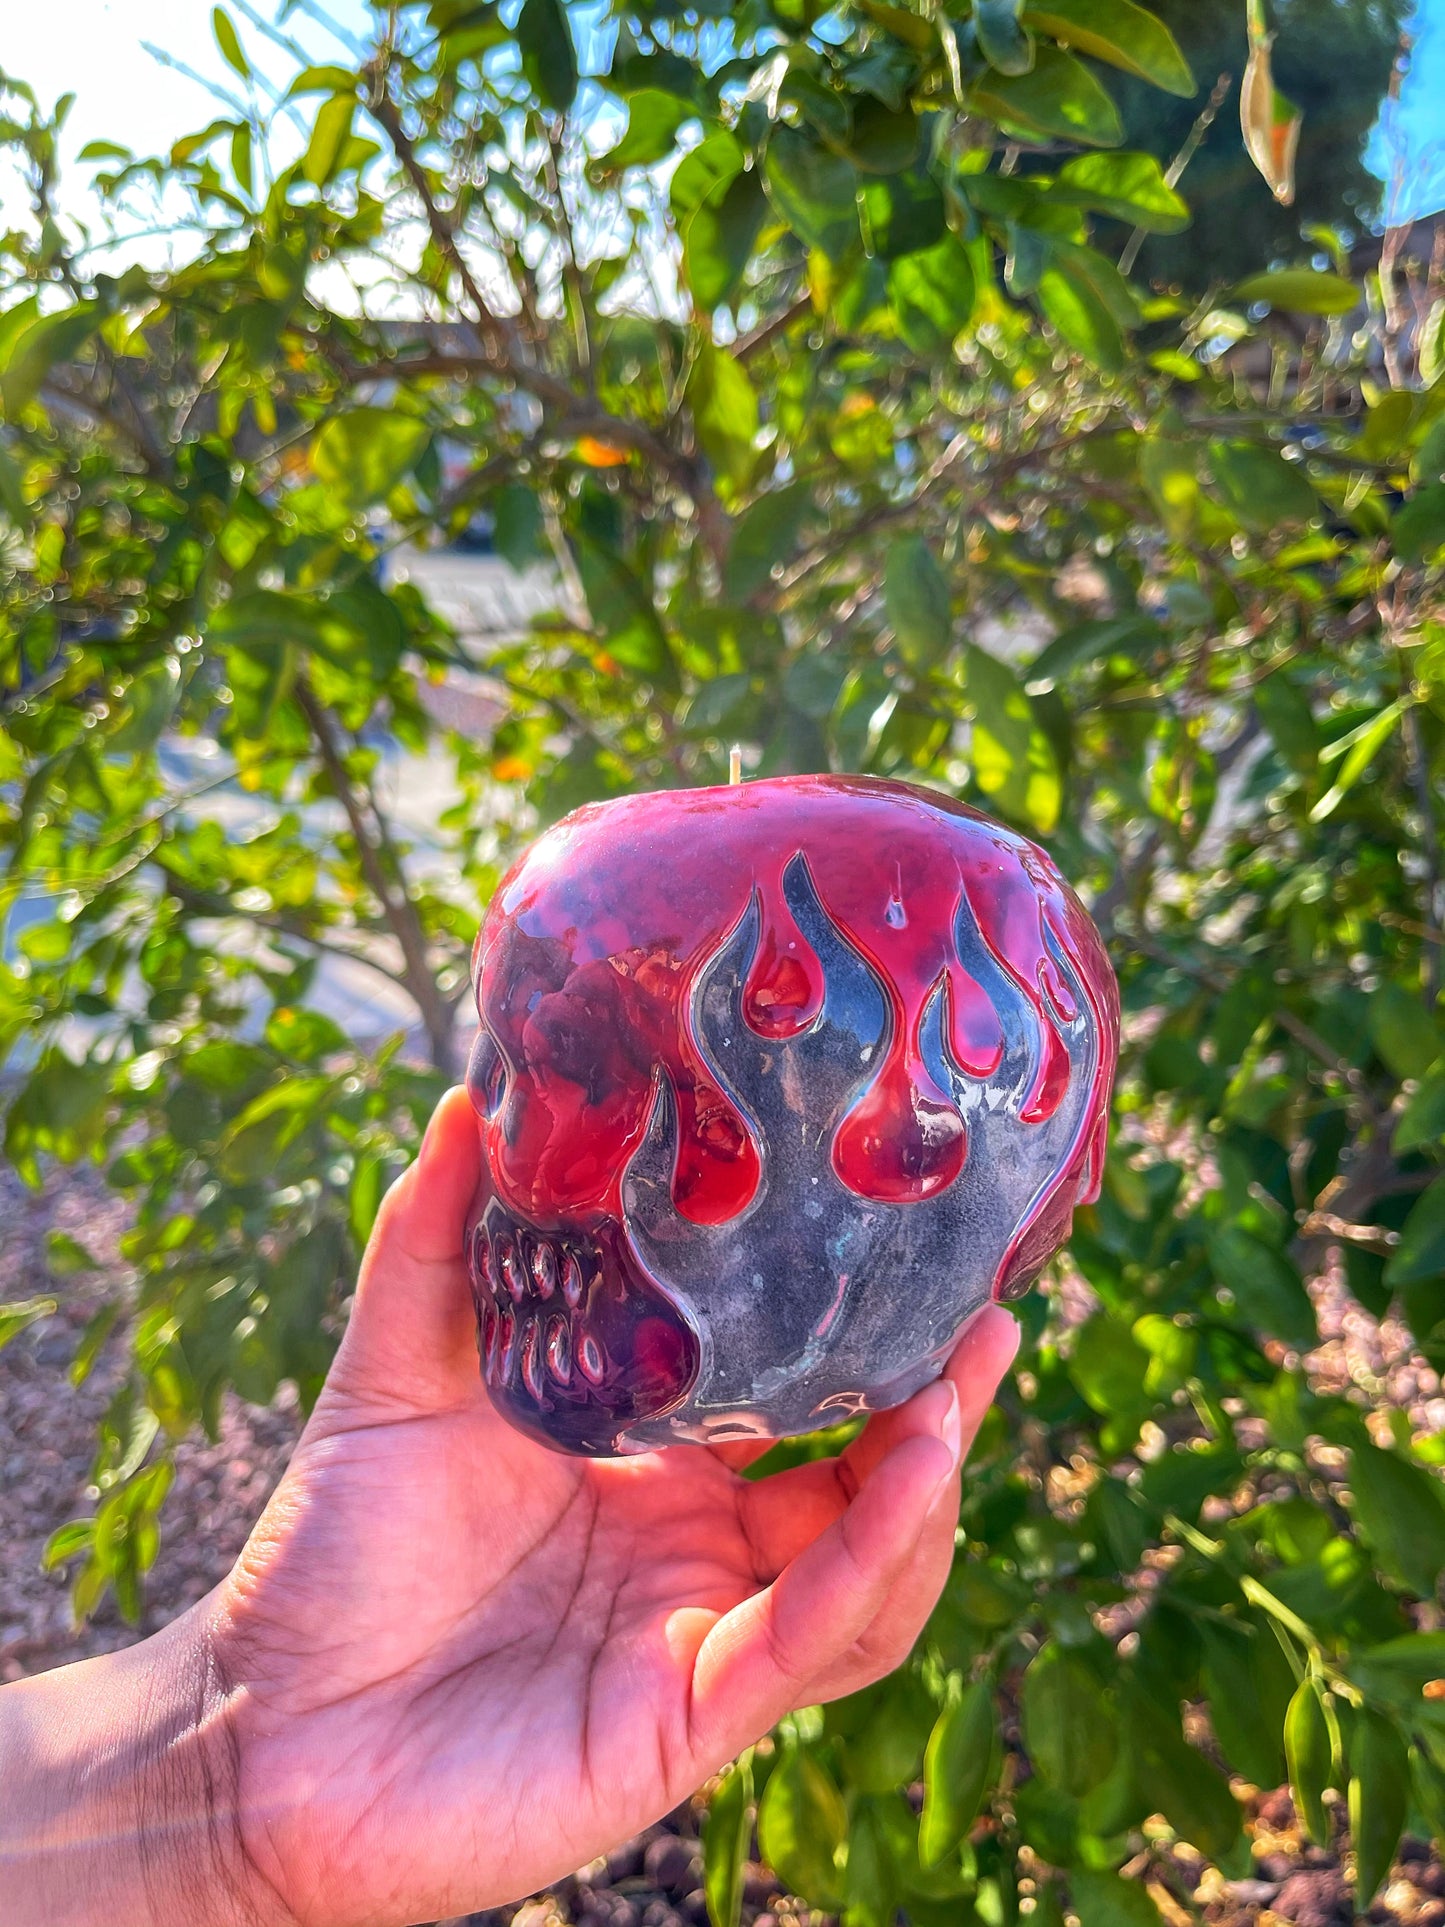 Flame Skull